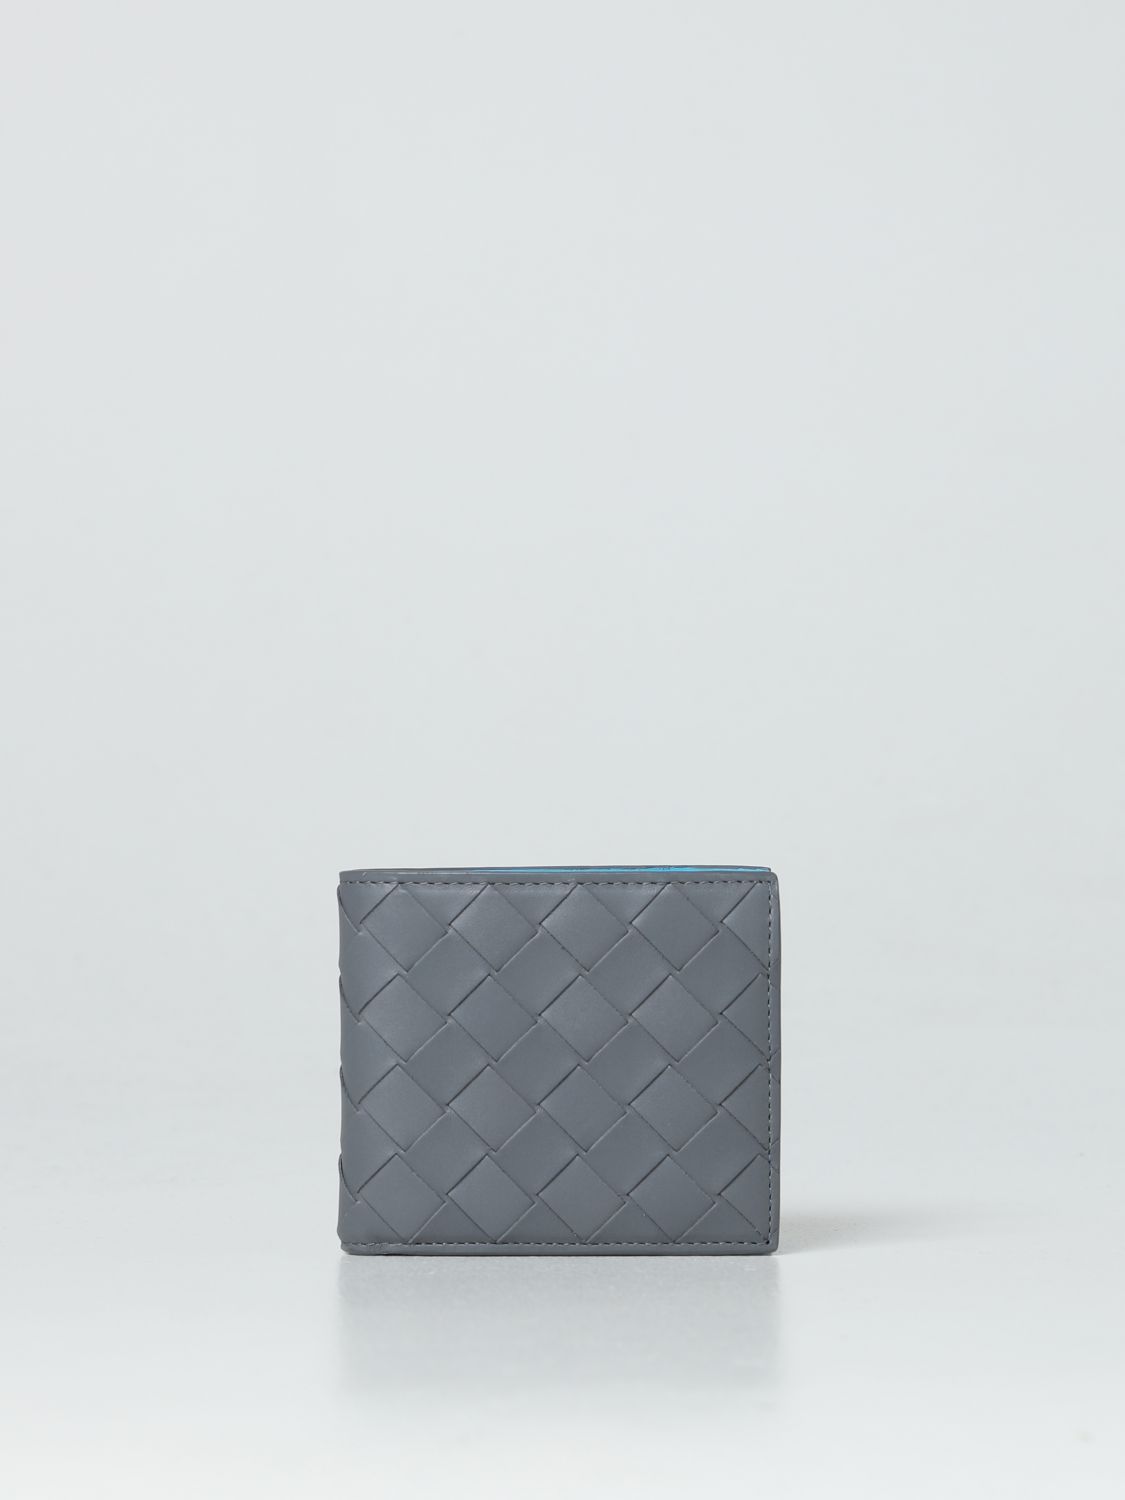 BOTTEGA VENETA: woven leather bi-fold wallet - Grey | Bottega Veneta ...